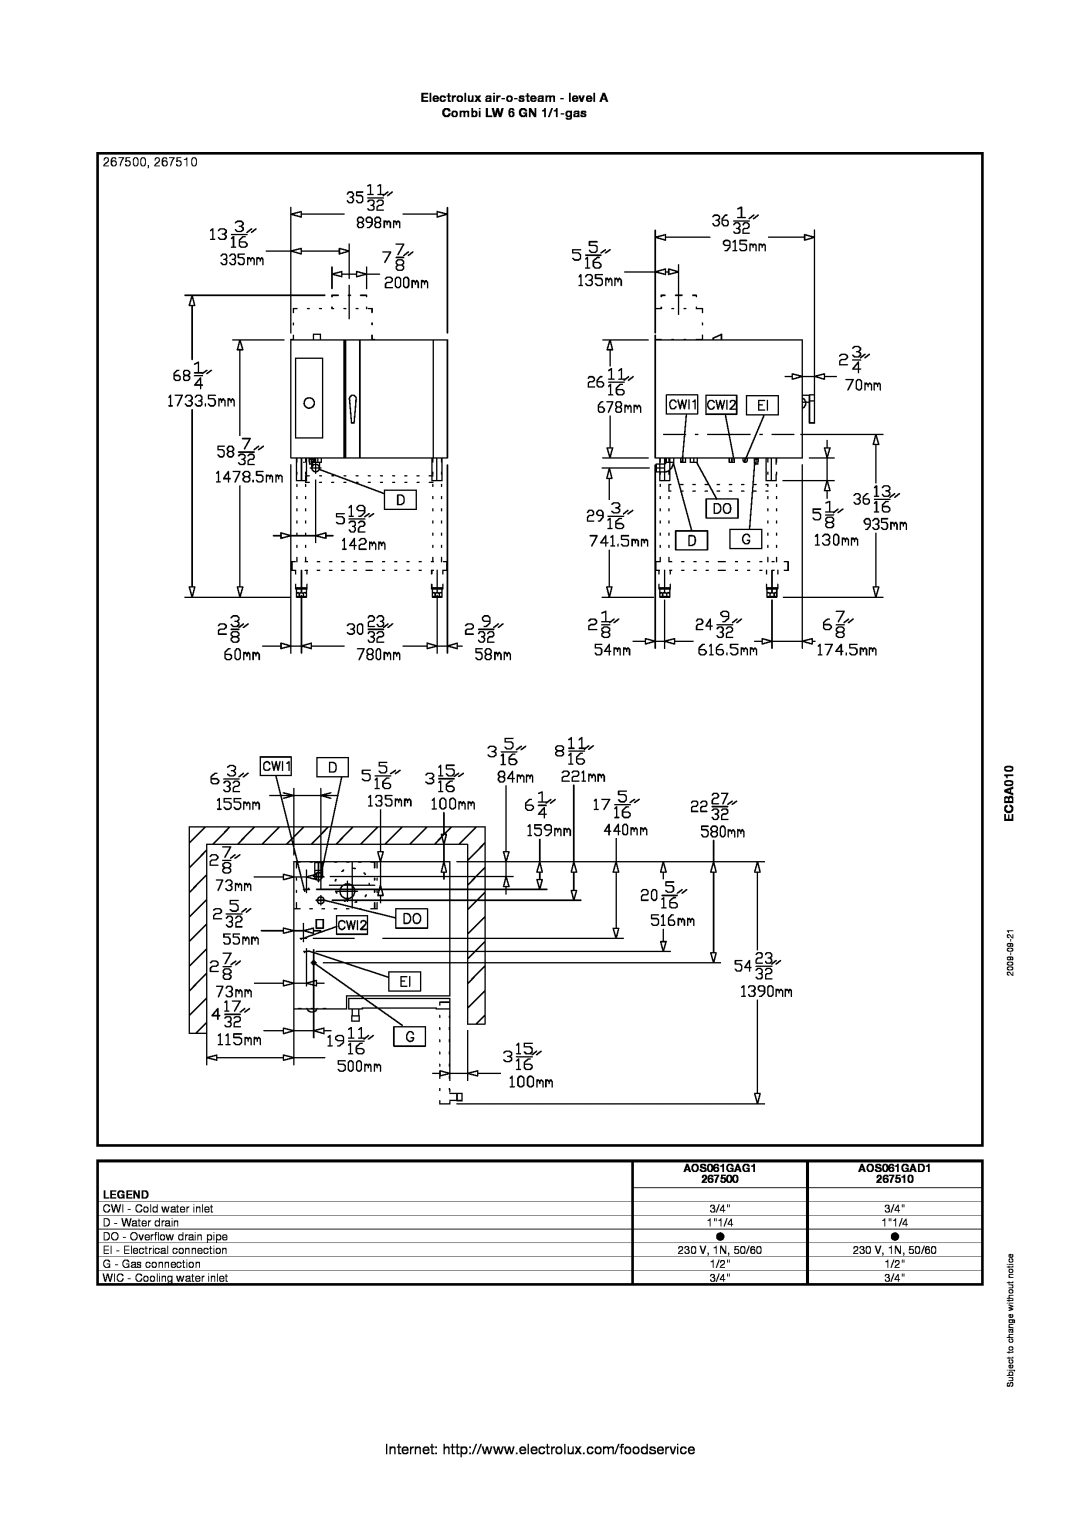 Electrolux AOS061GAD1 manual 267500, Electrolux air-o-steam - level A Combi LW 6 GN 1/1-gas, ECBA010, AOS061GAG1, 267510 